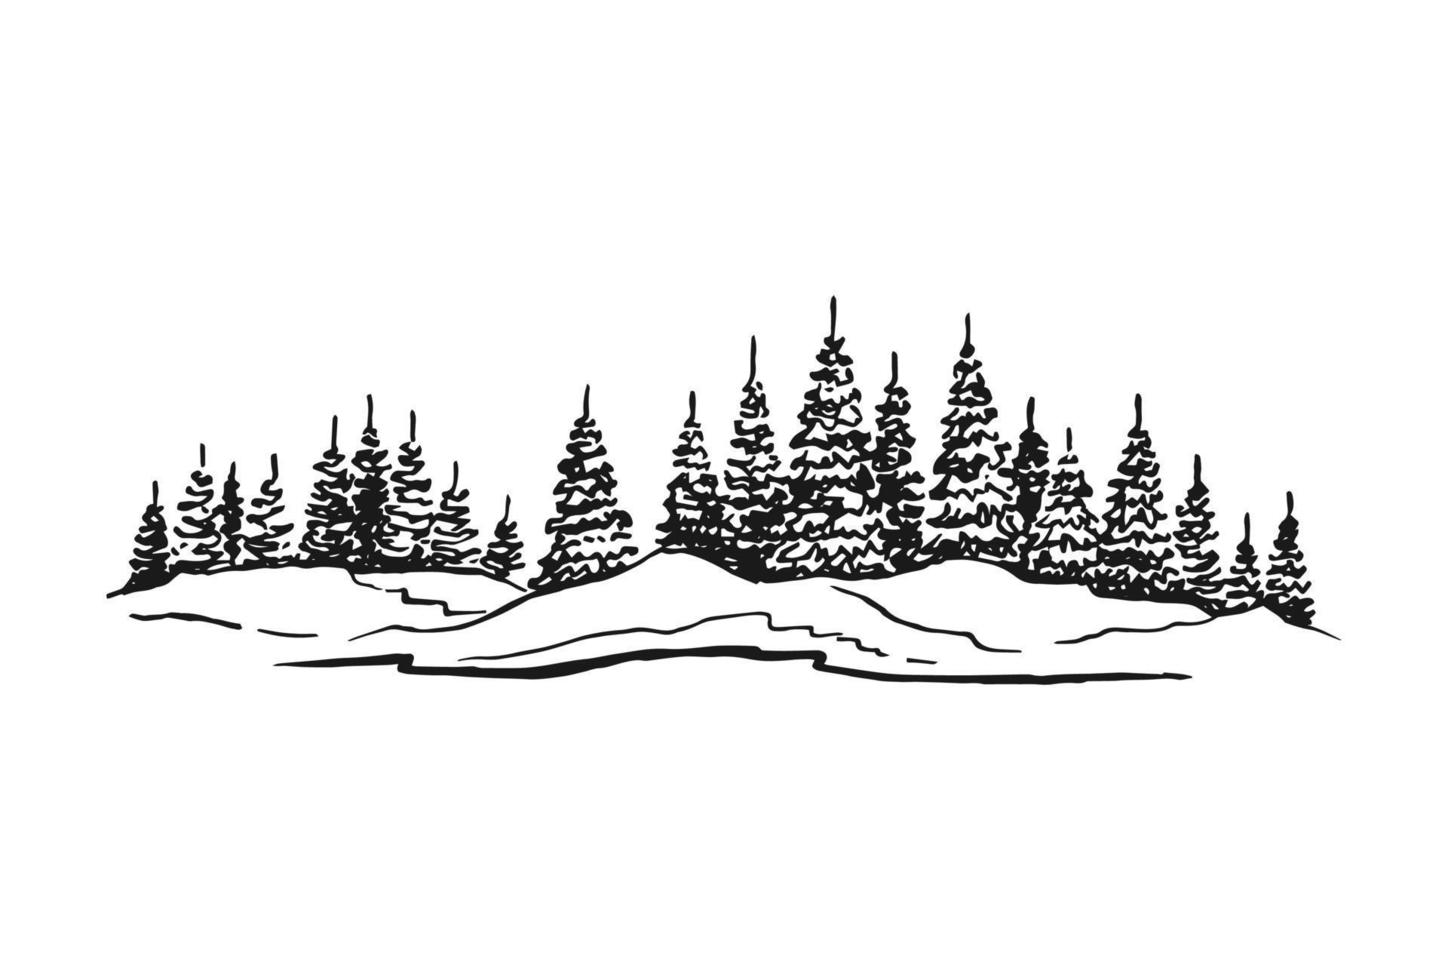 skiss av vild natur med skog. handritad illustration konverterad till vektor. vektor